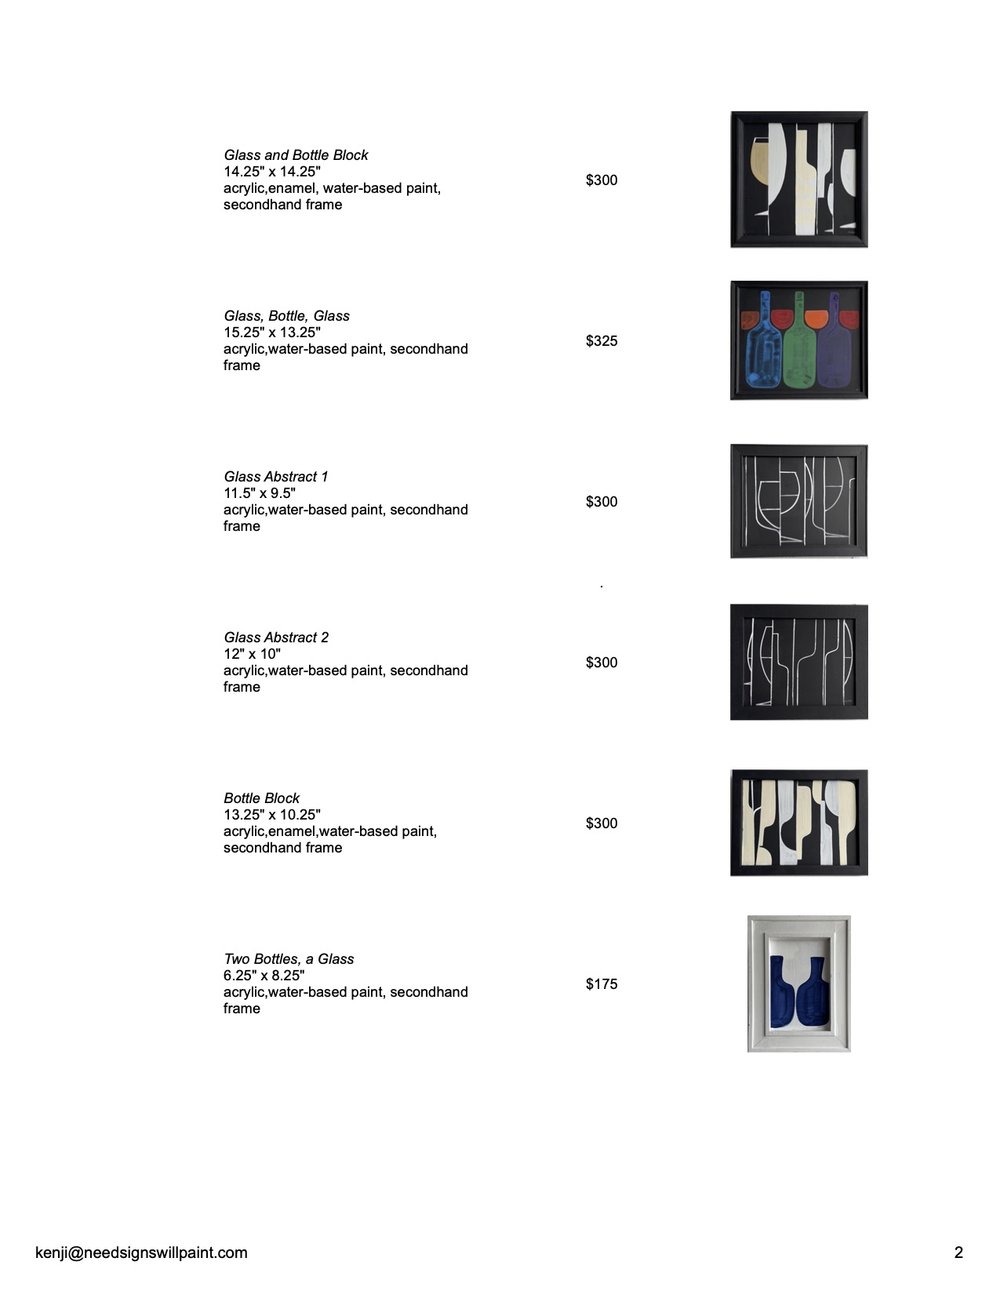 Pricelist - New Paintings at Gray's - Sheet2.jpg